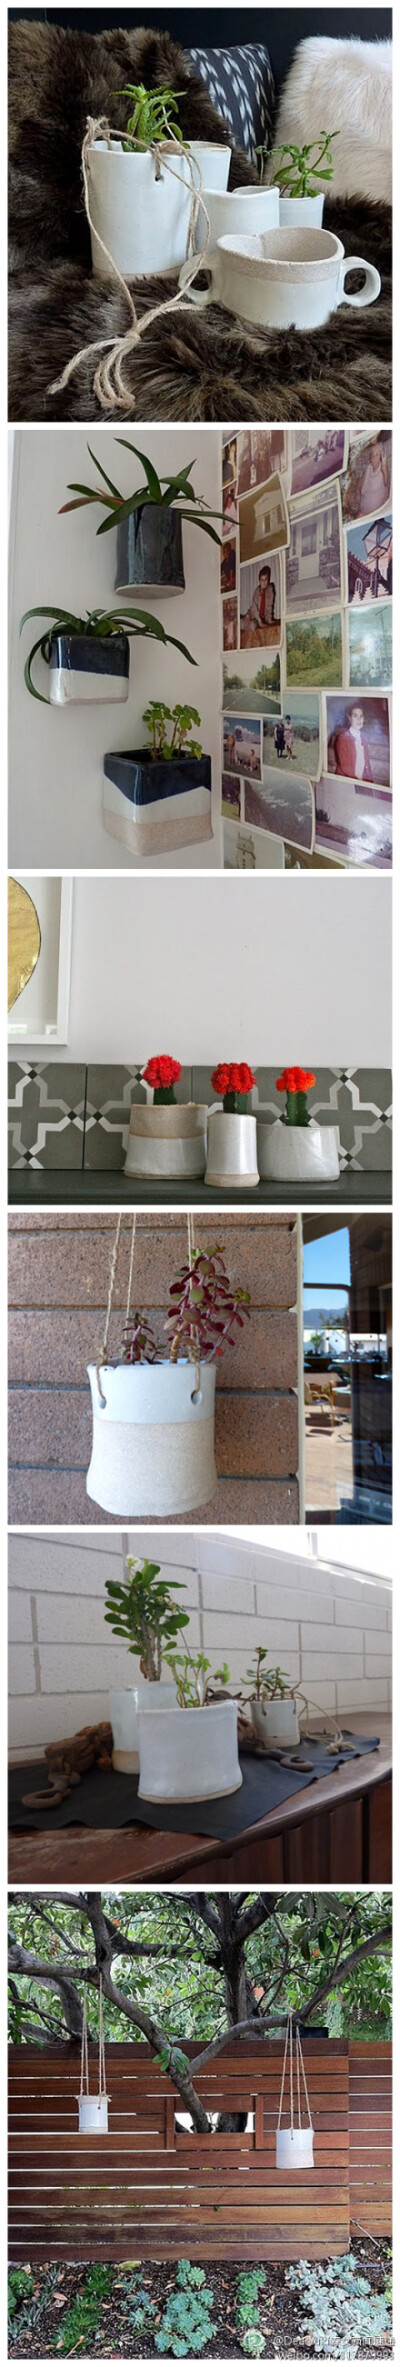 花盆荃湾陶器，美丽的陶器，新的室内花盆和花槽 。可以放在华丽的桌面或悬挂在室内，TW陶瓷有点朴实自然的感觉，非常实用。